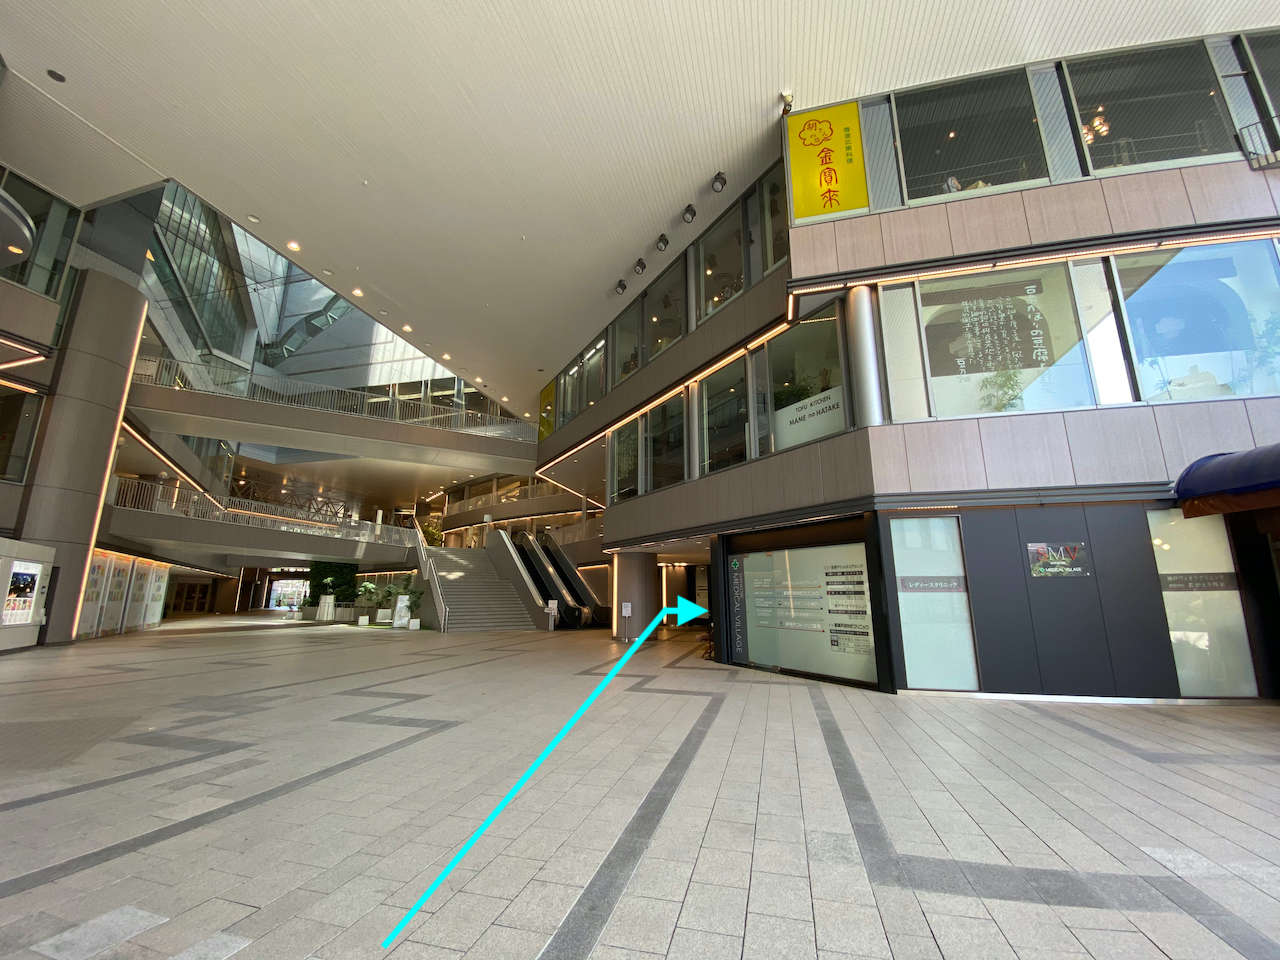 （4）出電梯後，請直接走進位於您右手邊的「新神戸メディカルビレッジ」(新神户Medi-Village)。